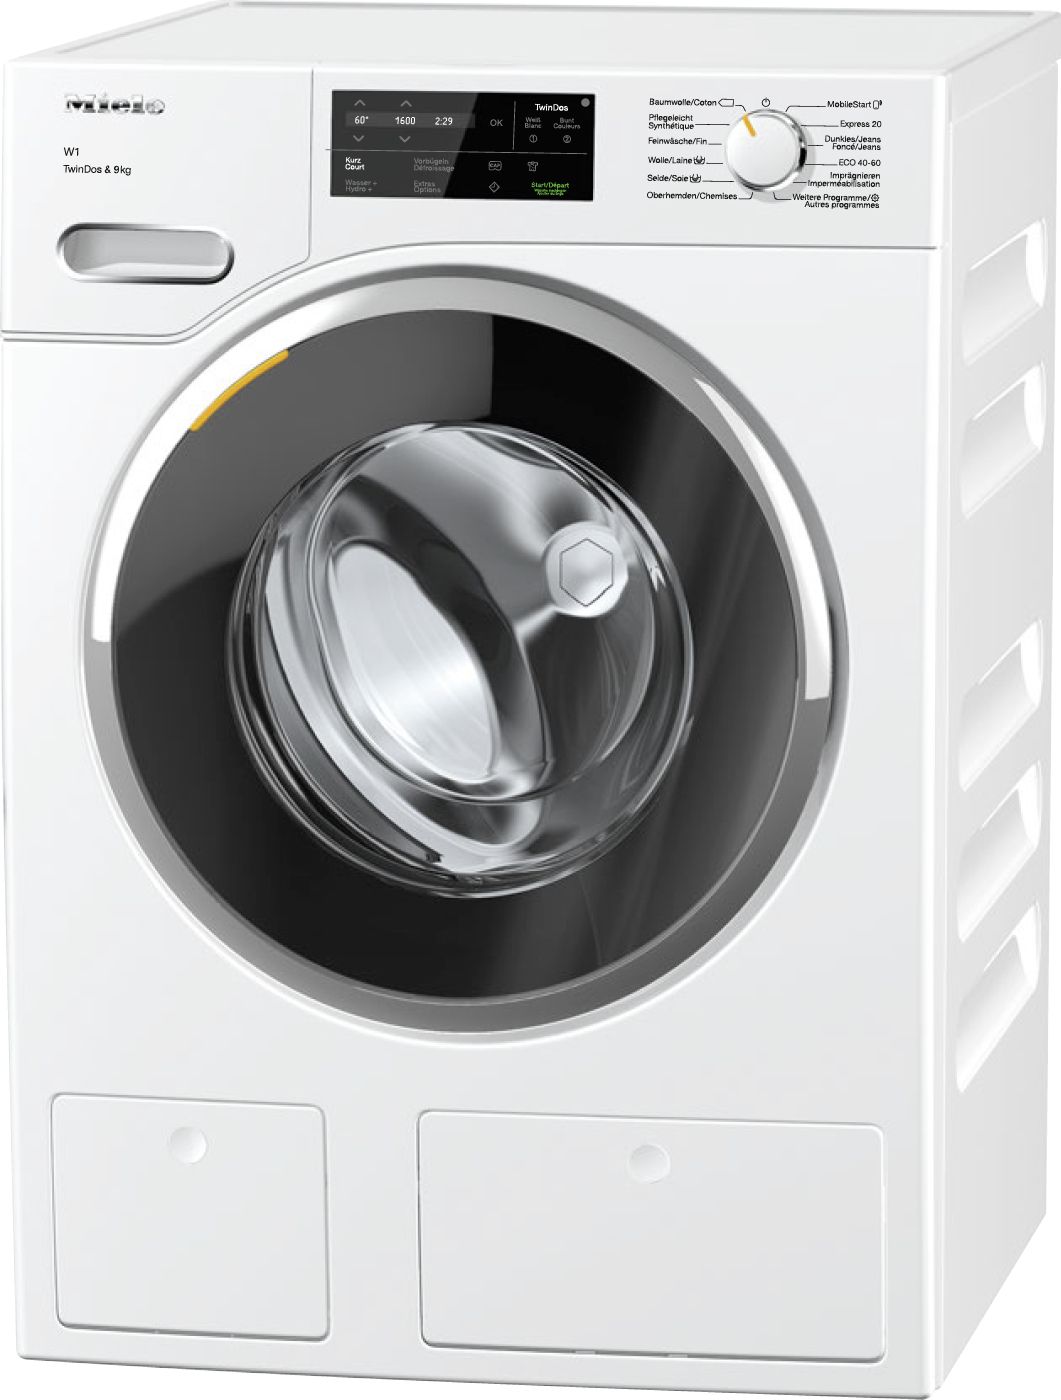 Bild von Miele WWG 600-60 CH Waschmaschine Lotosweiss, 11357840